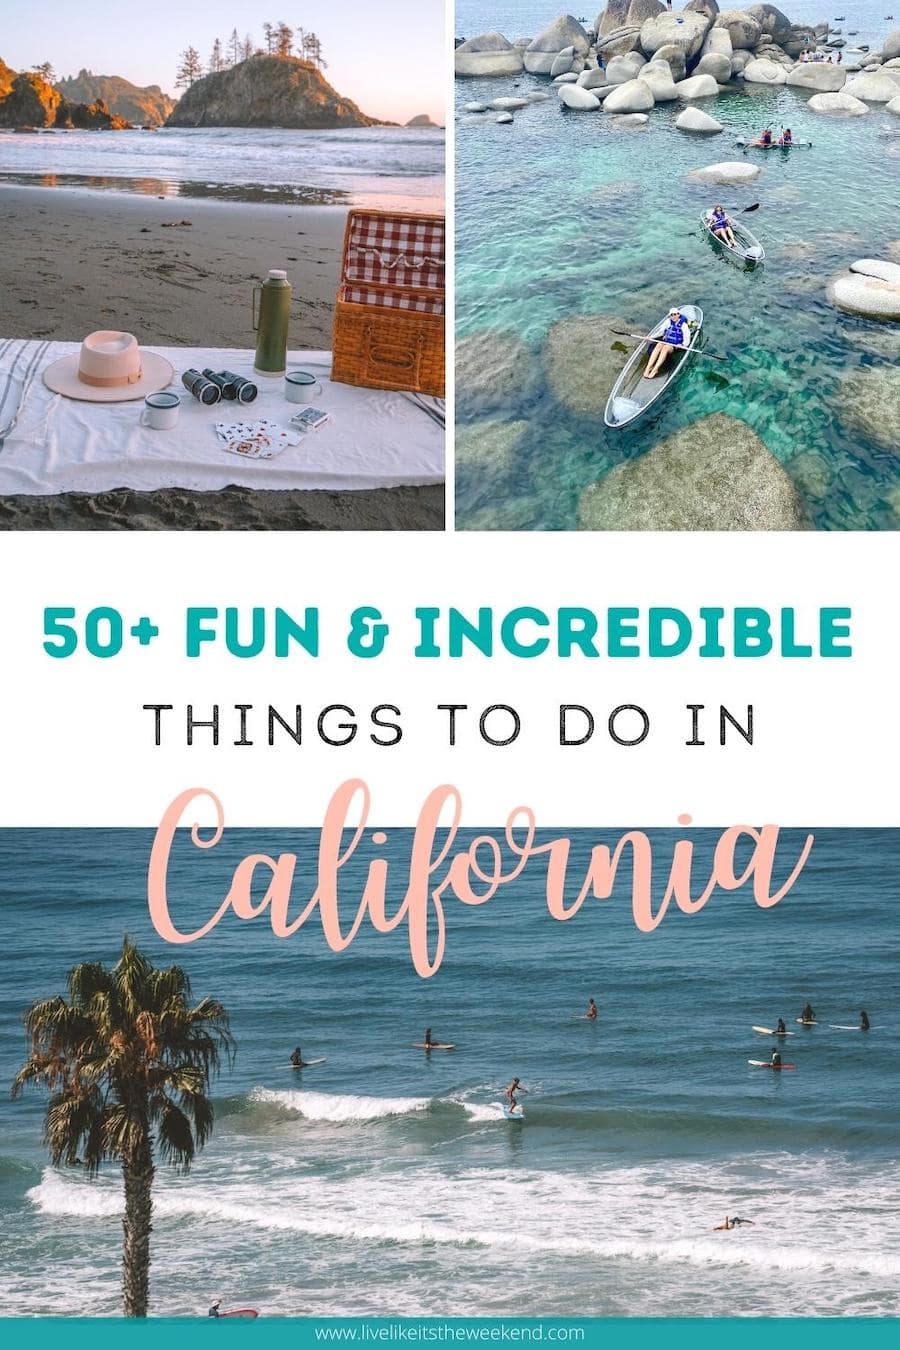 Portada de pin para publicación de blog sobre más de 50 cosas divertidas para hacer en California